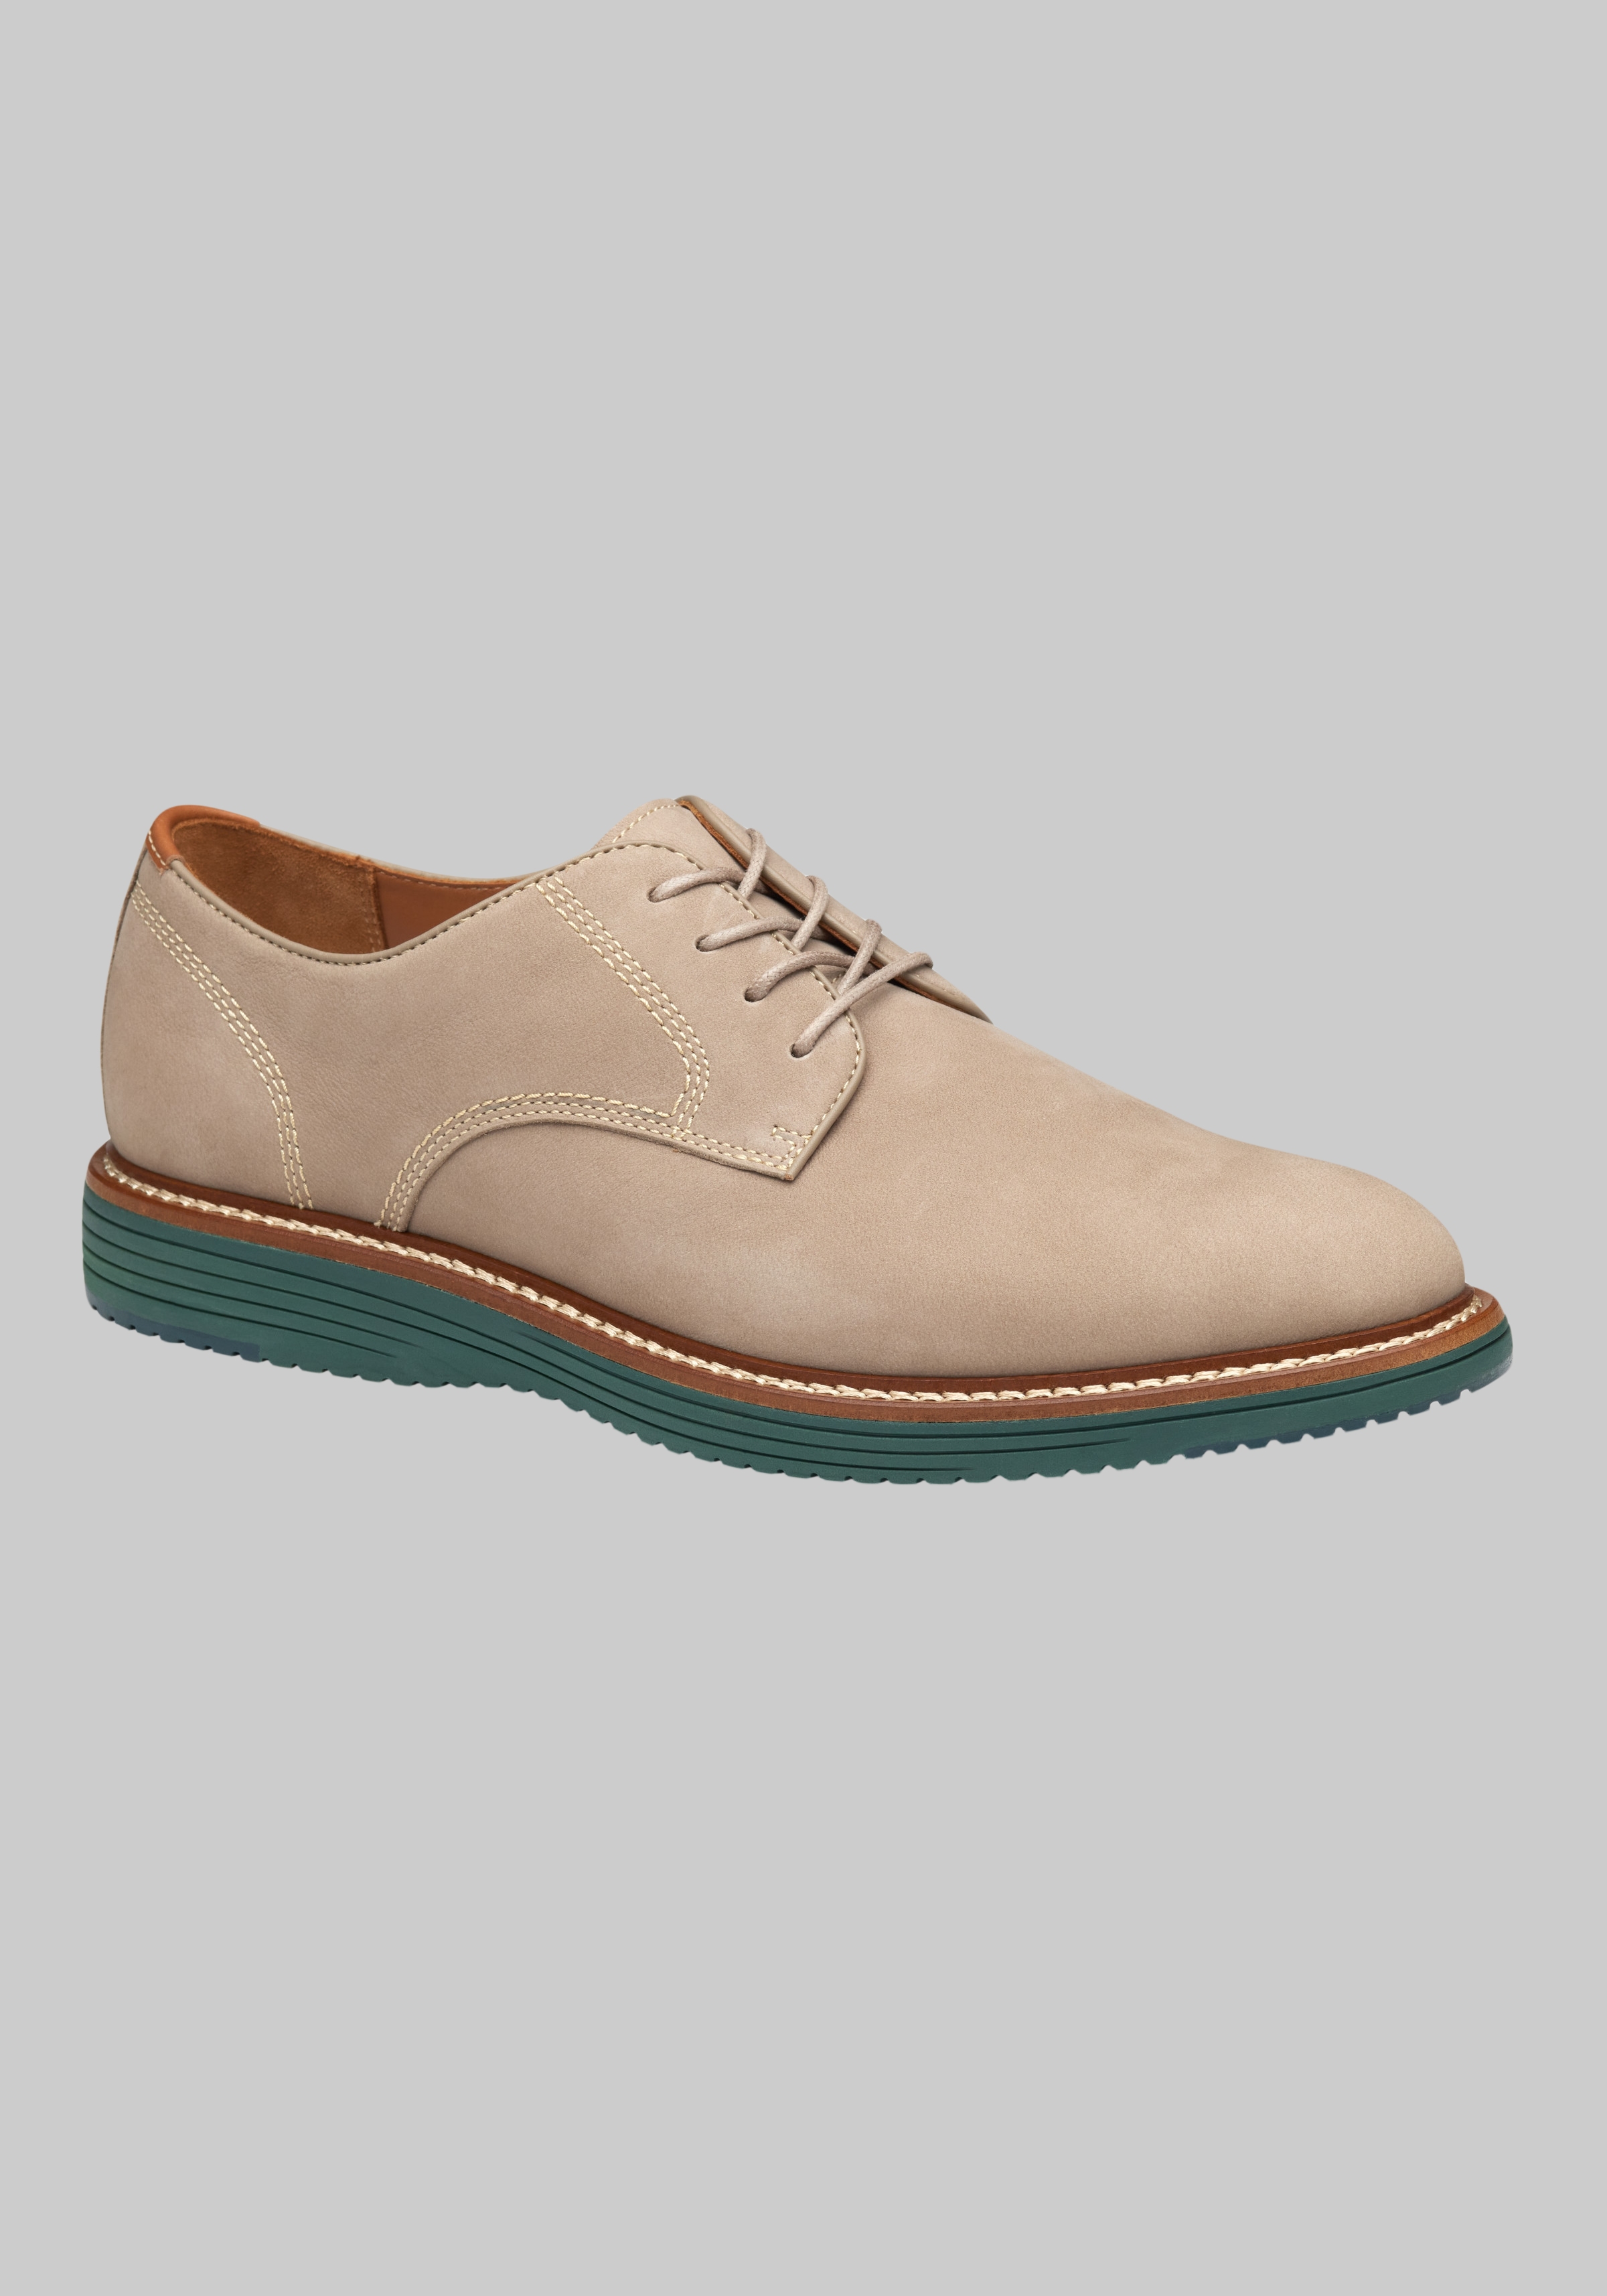 Johnston & Murphy | Men's Shoes | JoS. A. Bank Clothiers